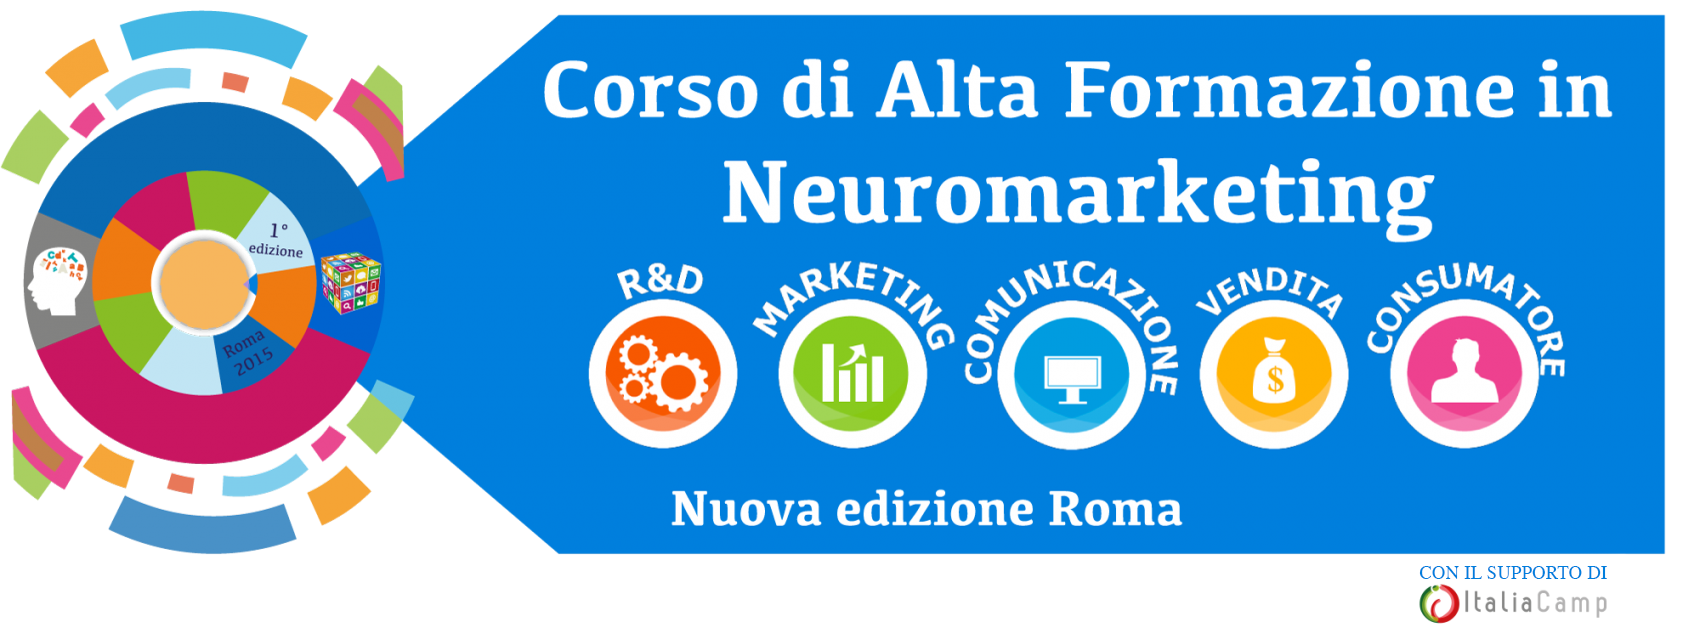 italiacamp-ospita-il-corso-di-alta-formazione-in-neuromarketing